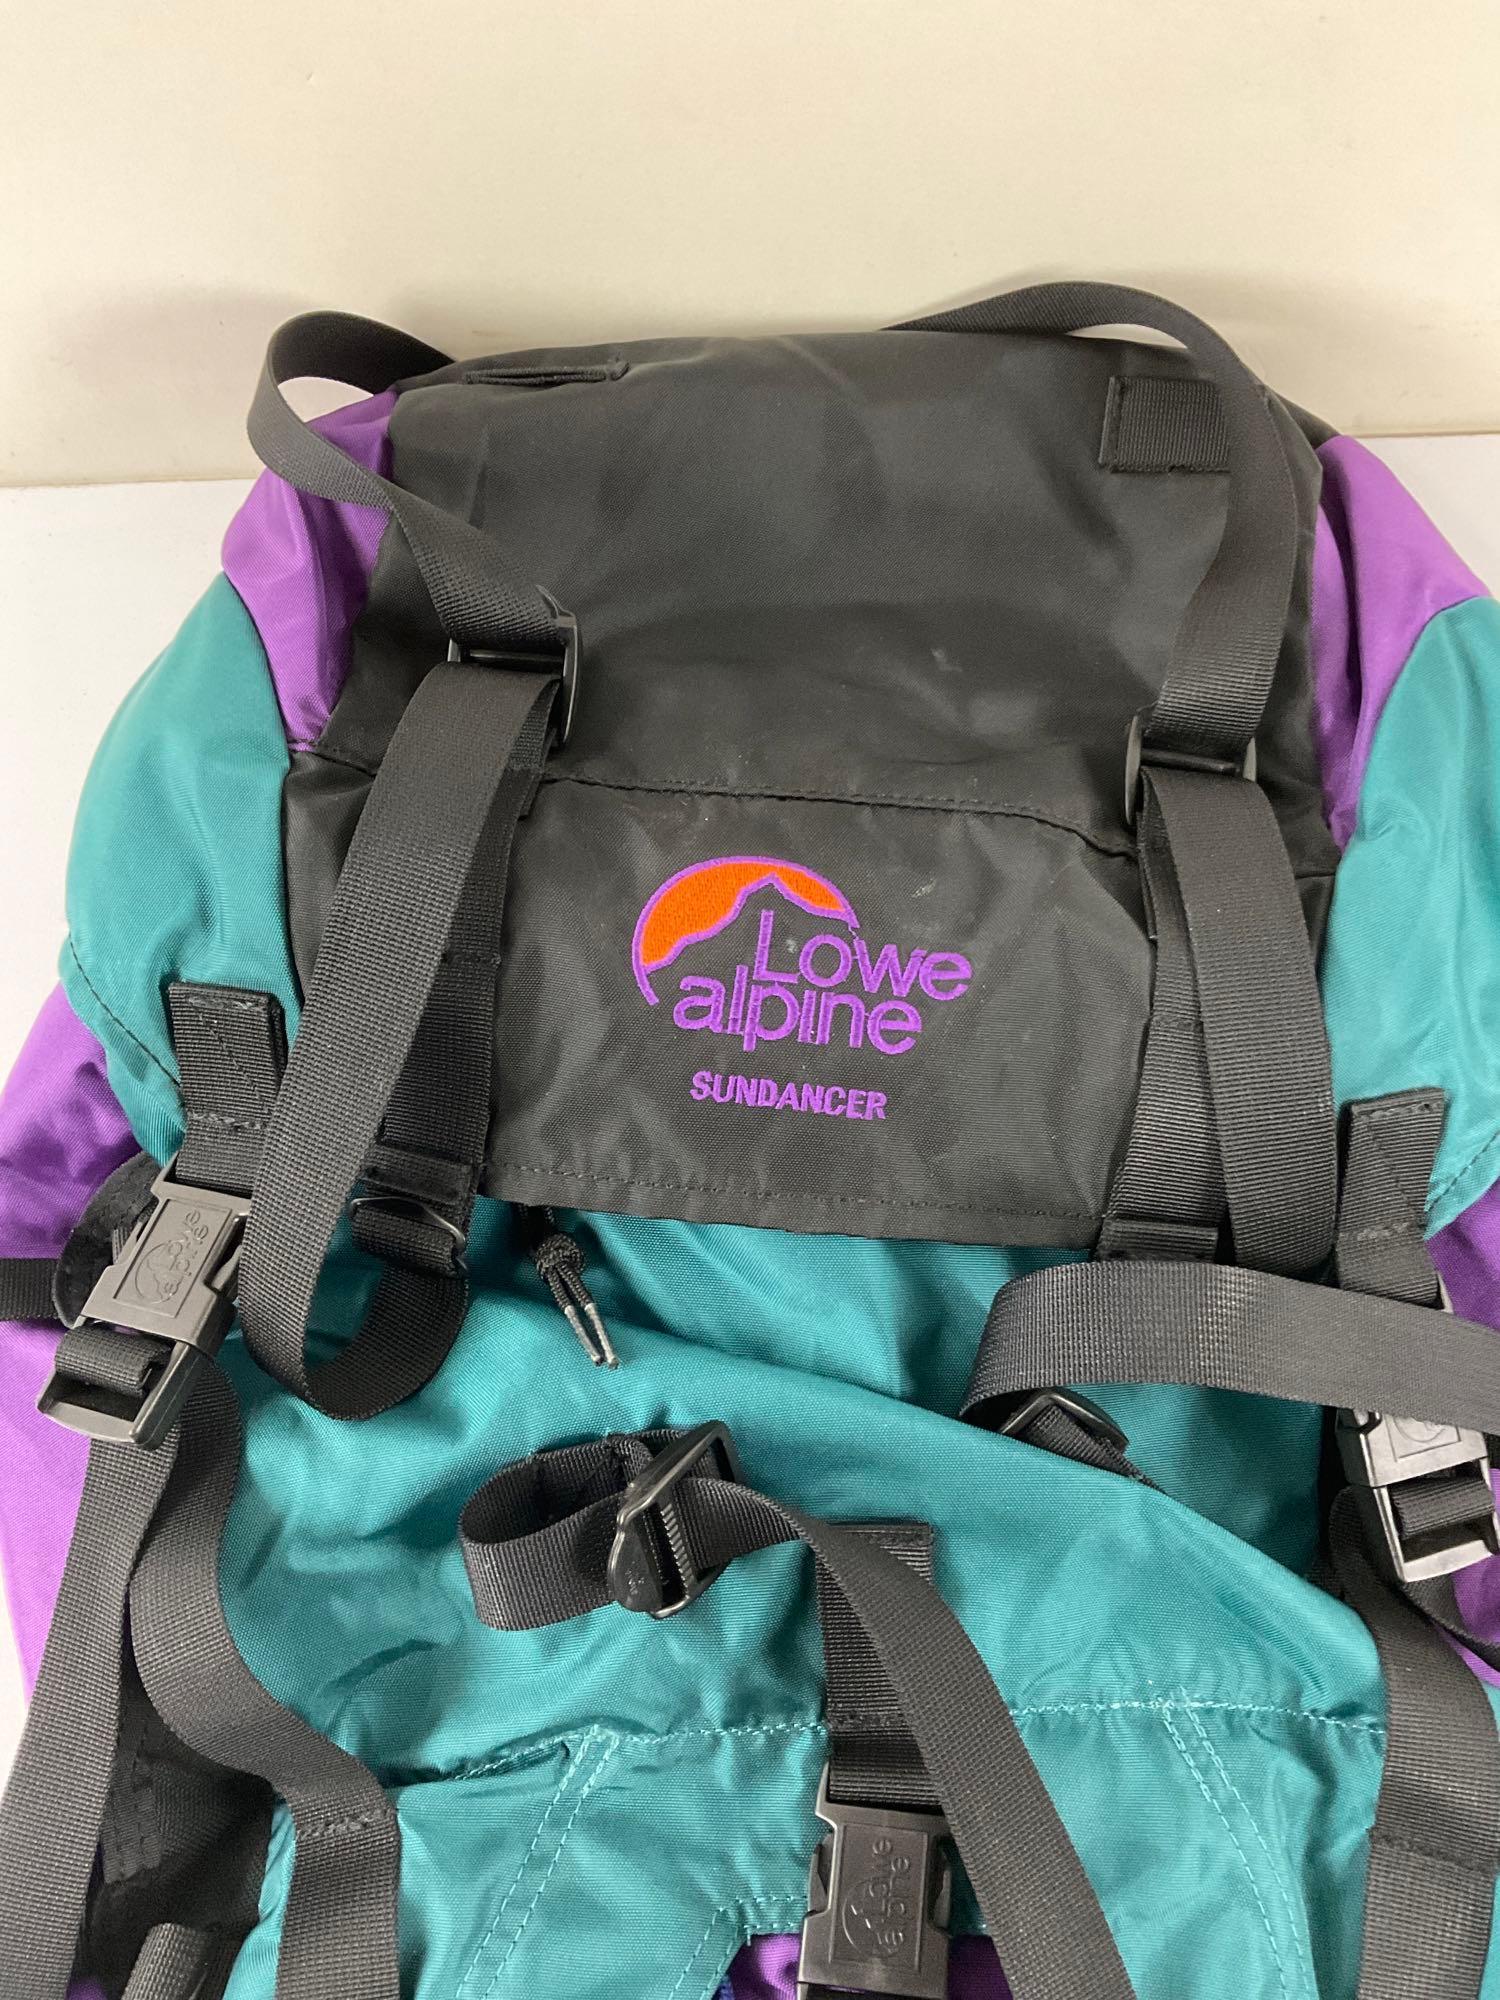 Lowe Alpine Sundance vintage frame backpack/hiking/camping